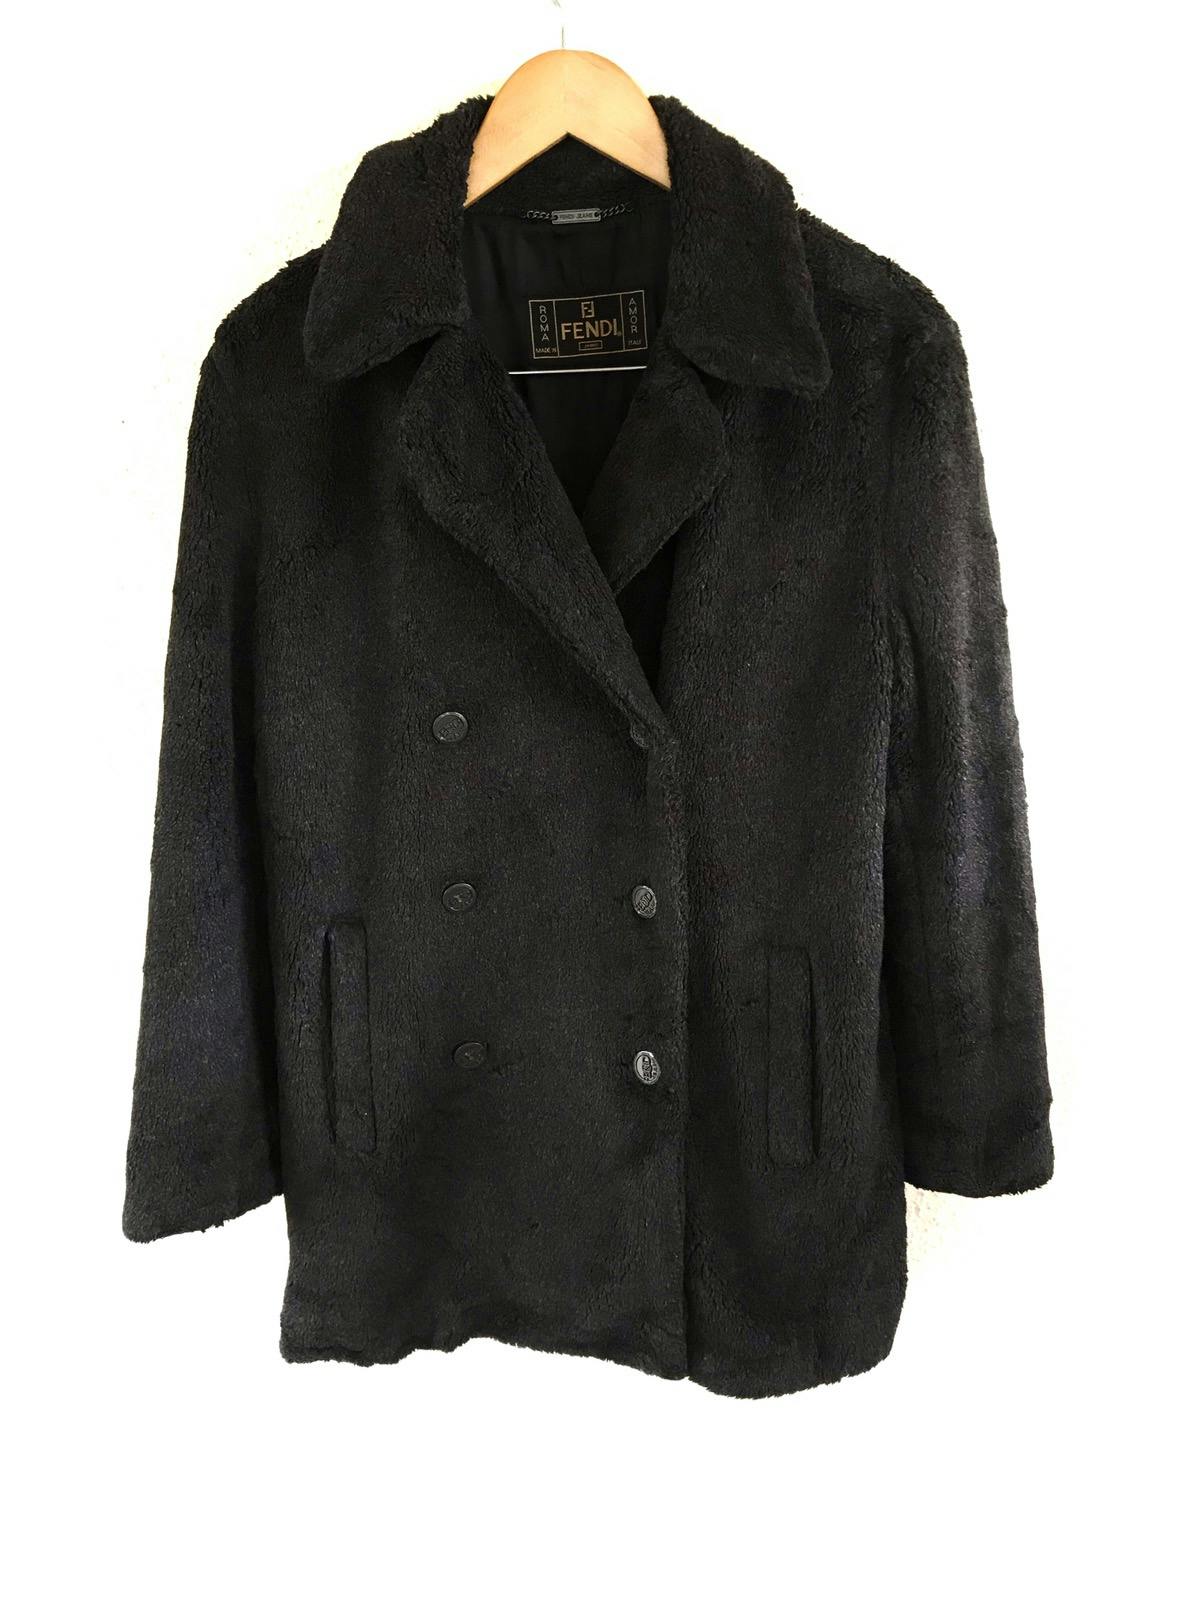 FENDI Jeans Boa Coat/ Fur Jacket Made in Italy - 5